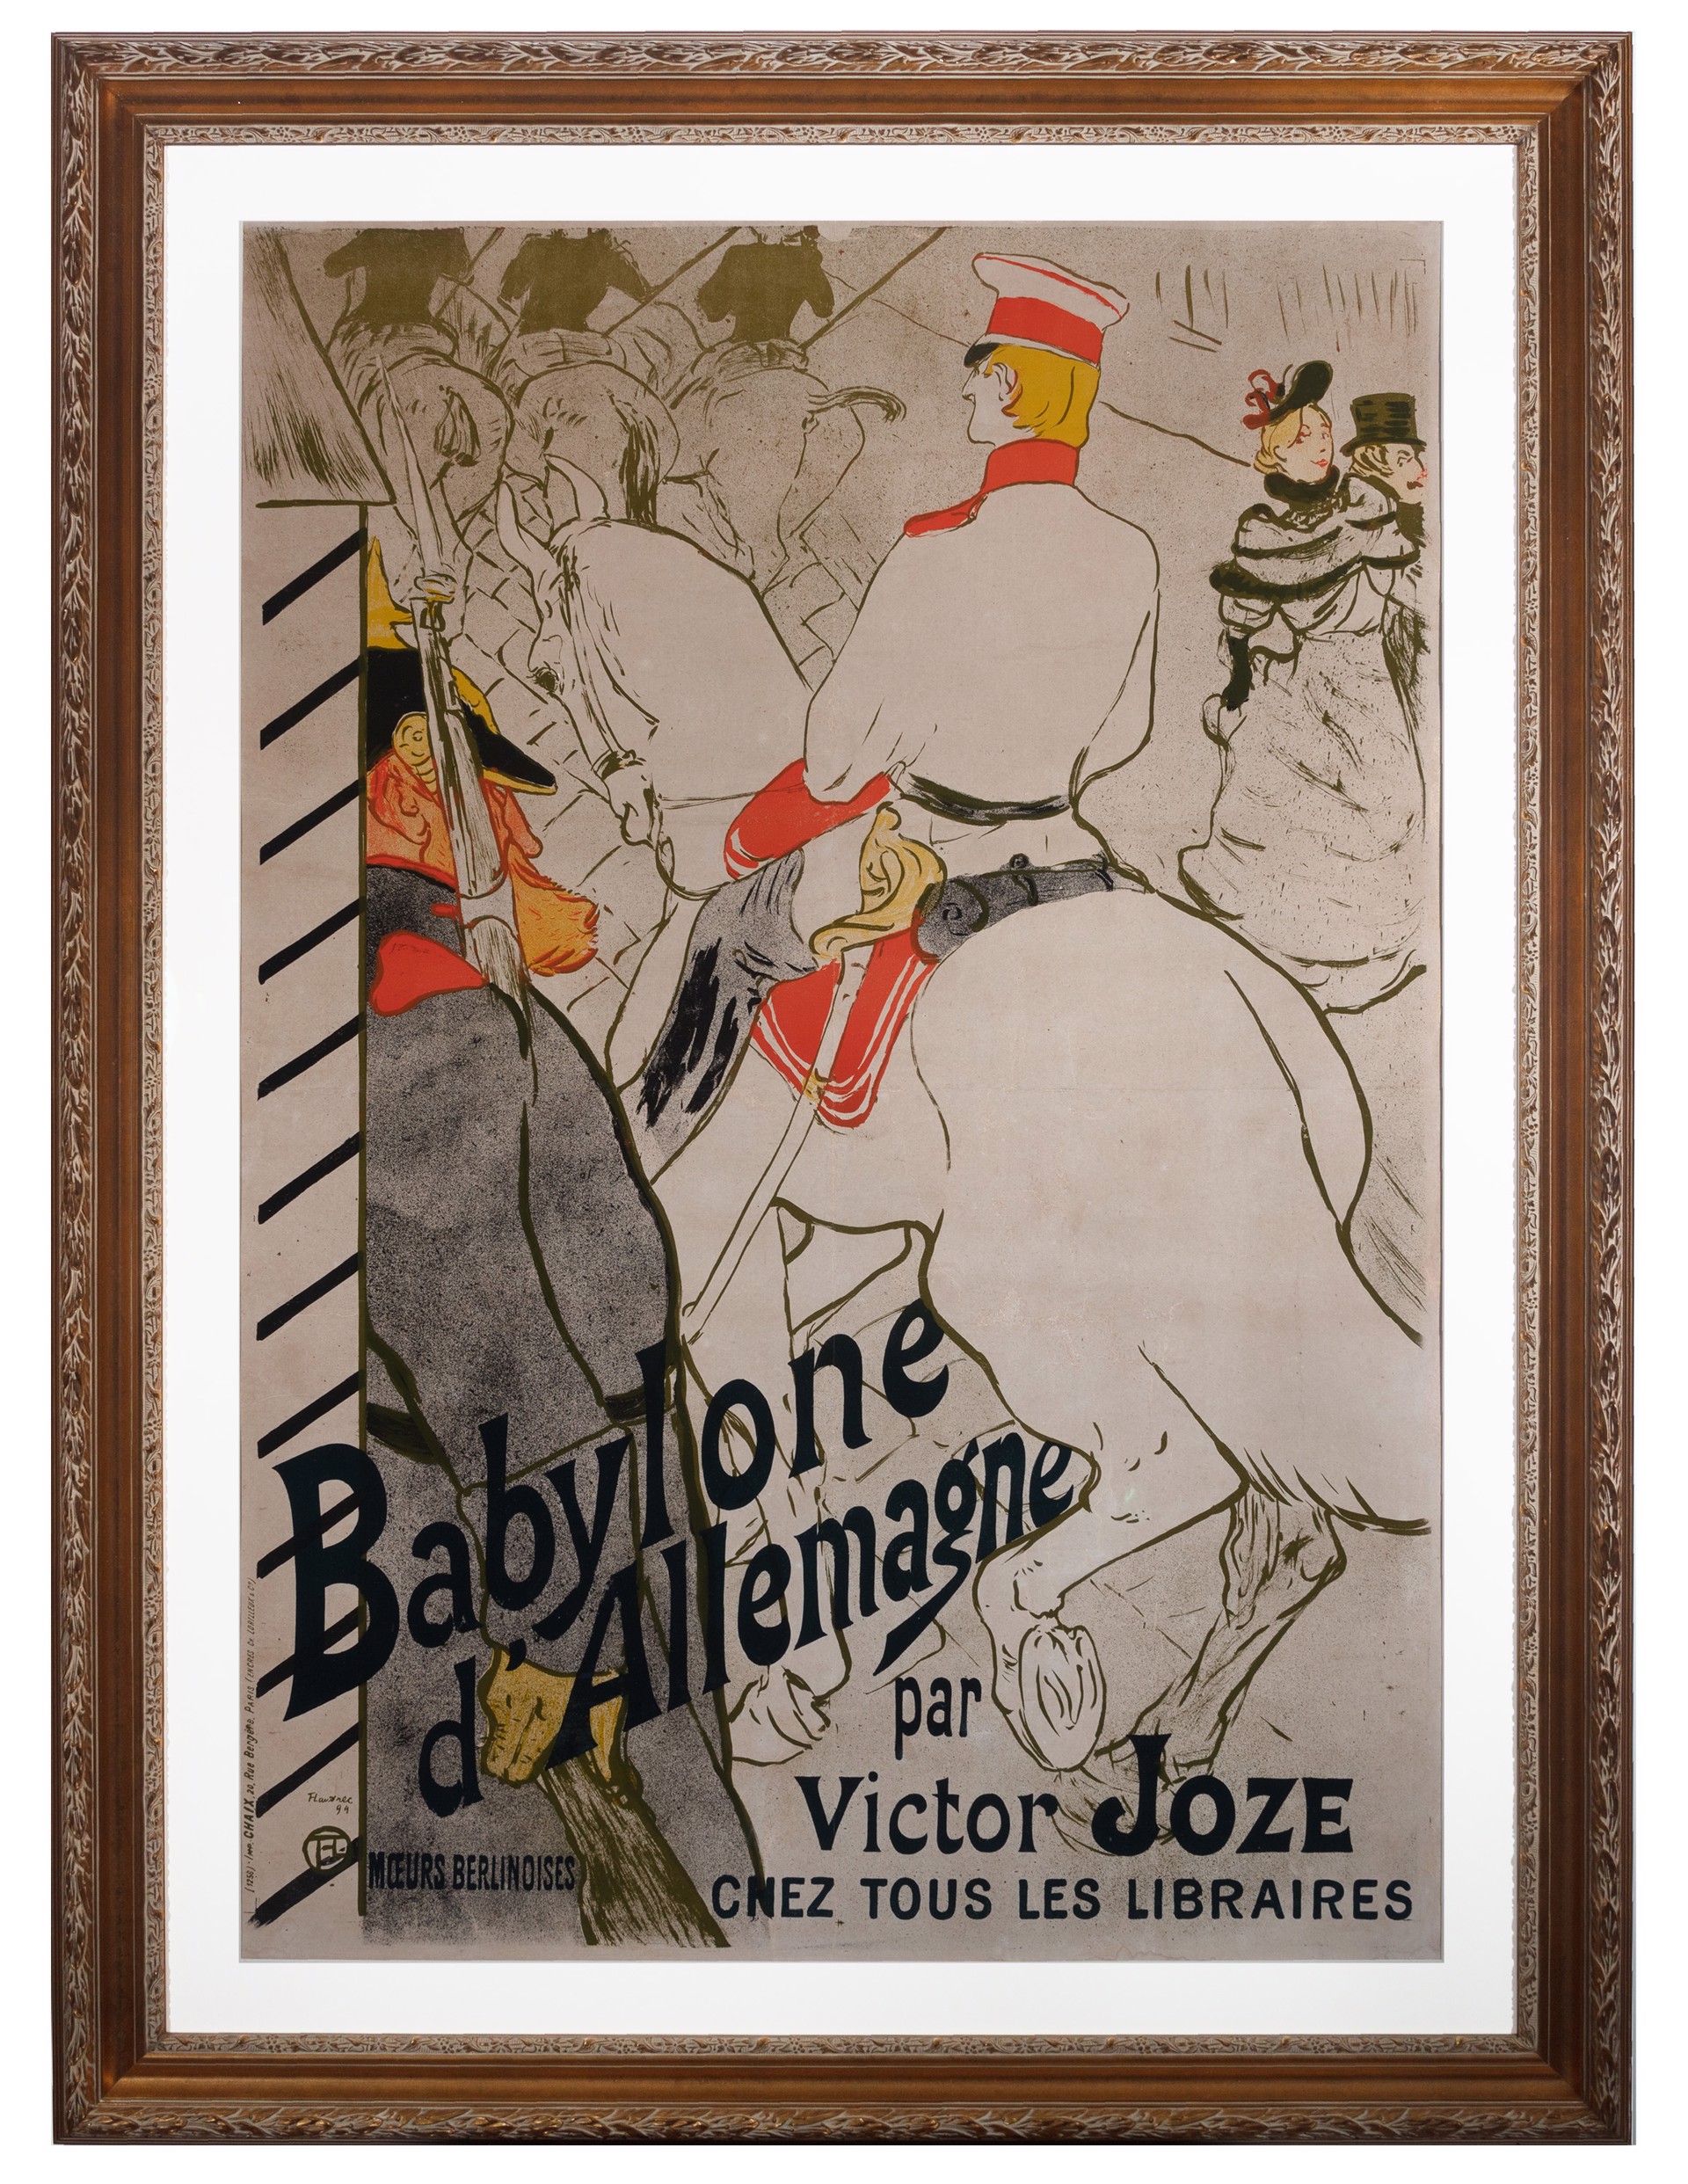 Babylone d'Allemagne (German Babylon) by Henri de Toulouse-Lautrec